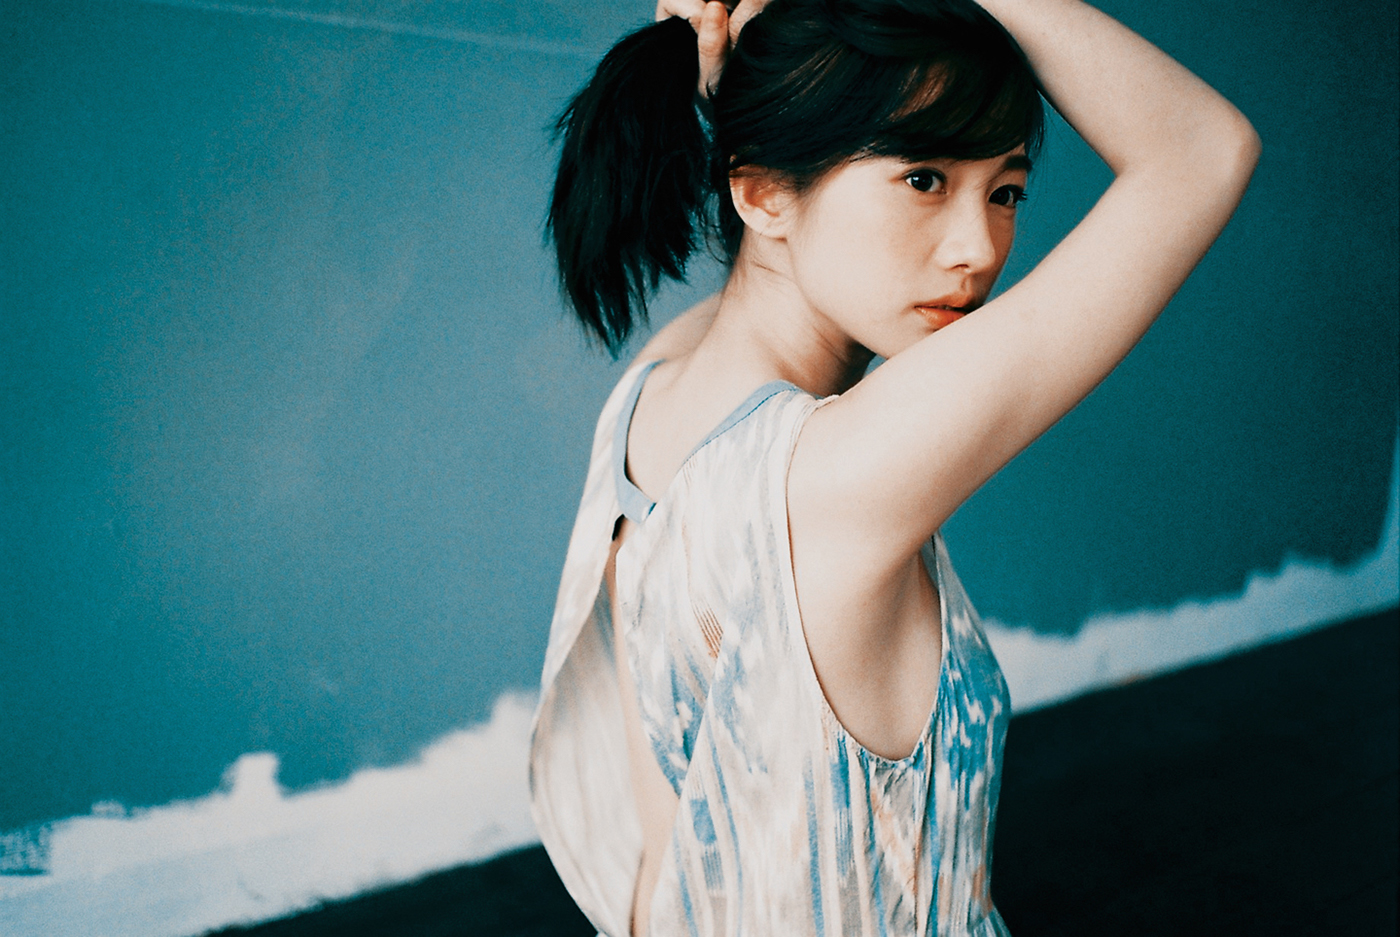 Huang Jun Tuan Jian Man-Shu fhm magazine FHM 100 SEXIEST taiwan taipei tuan tuan angelbeatfoto